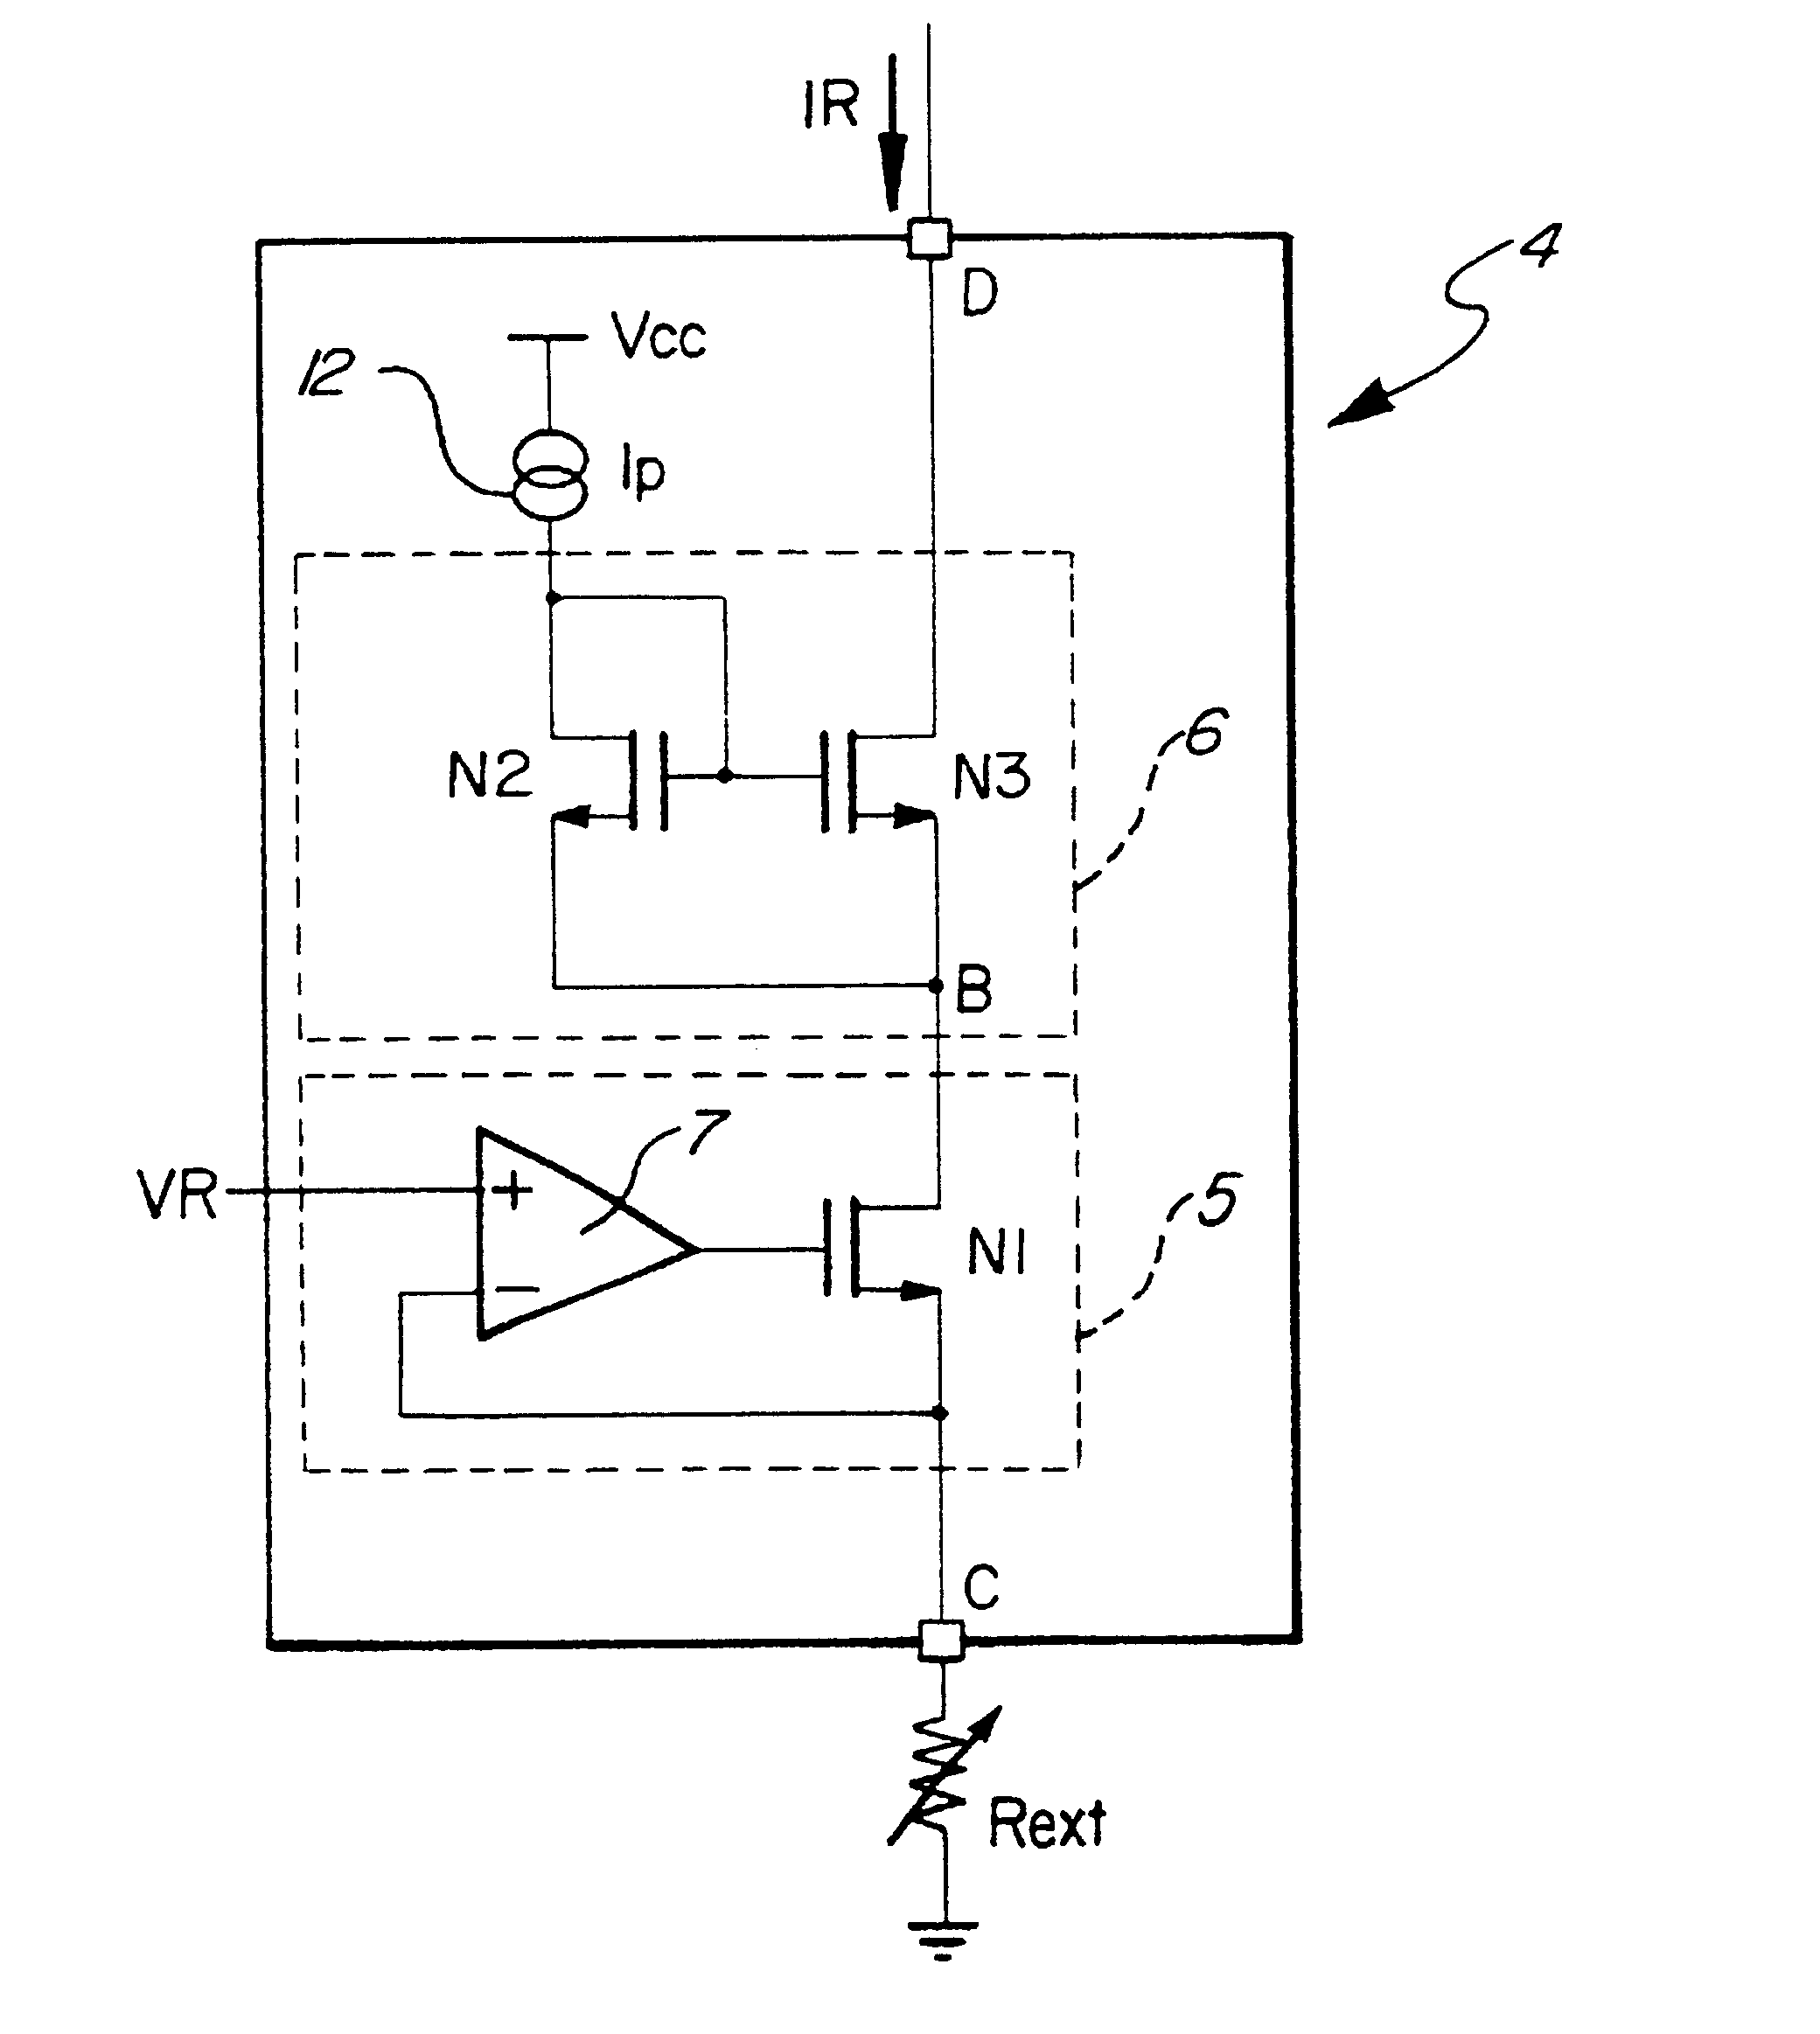 Current limitation programmable circuit for smart power actuators